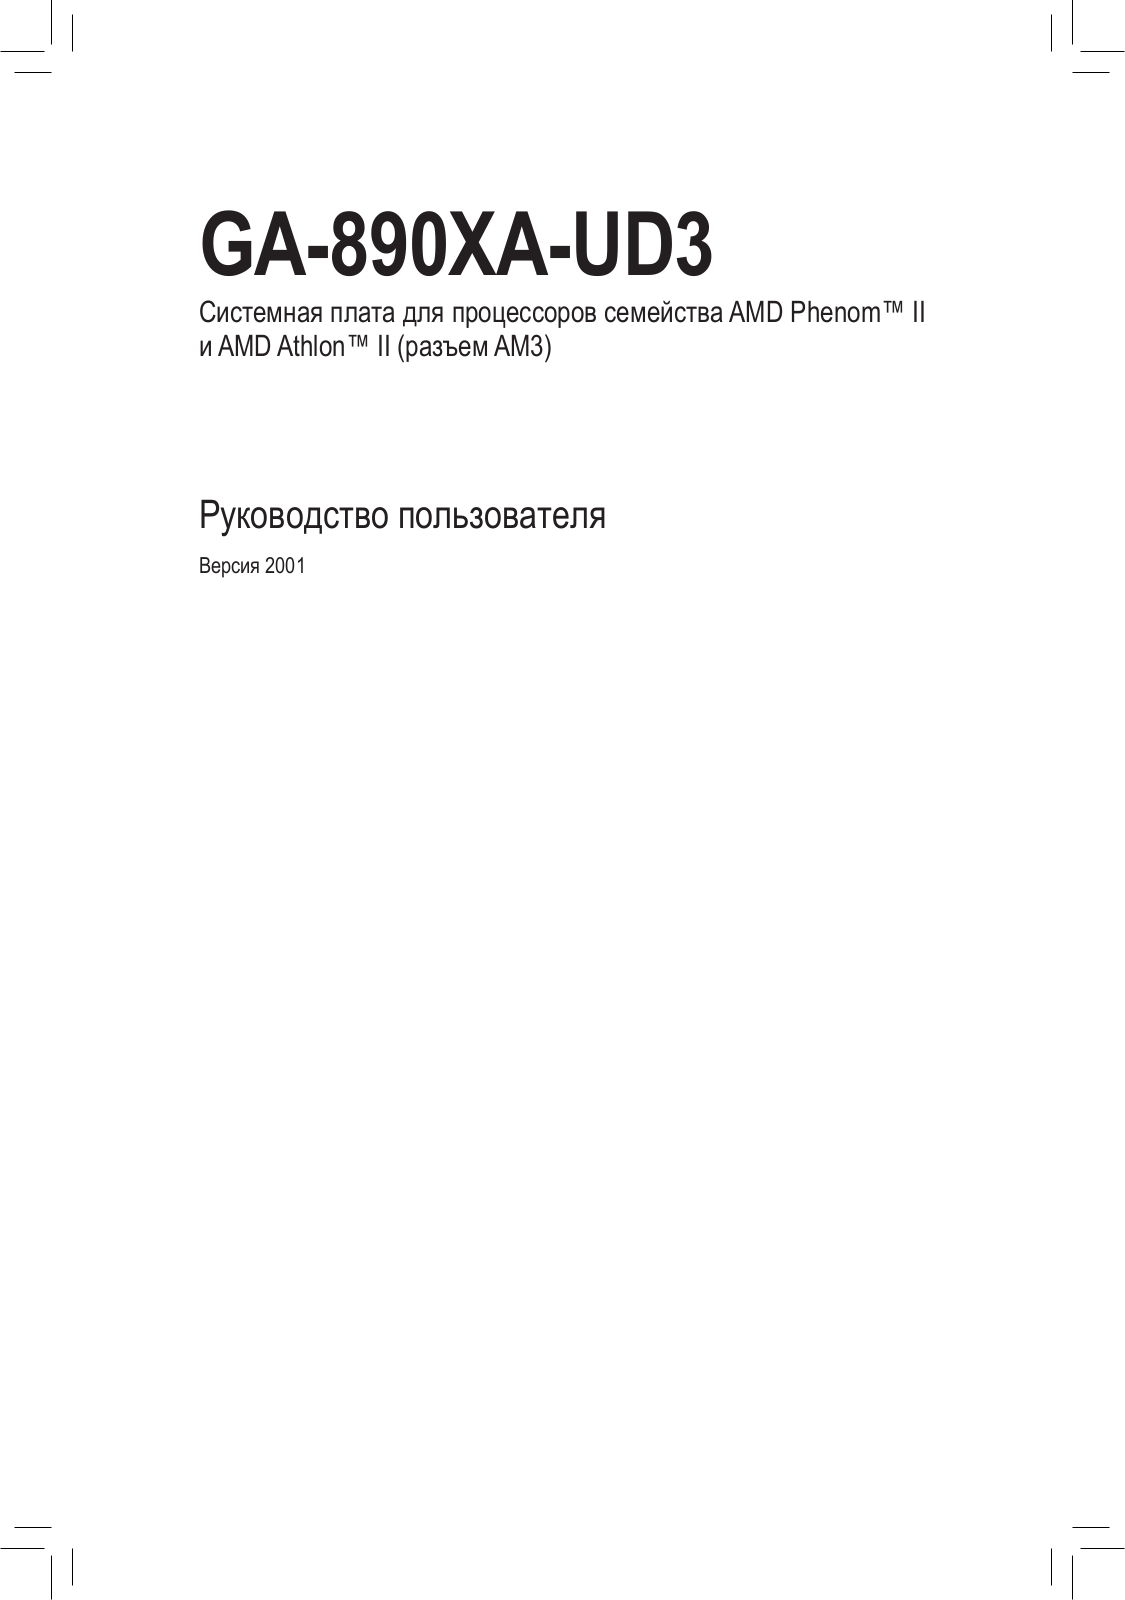 Gigabyte GA-890XA-UD3 (rev.1.0), GA-890XA-UD3 (rev.2.0) User Manual